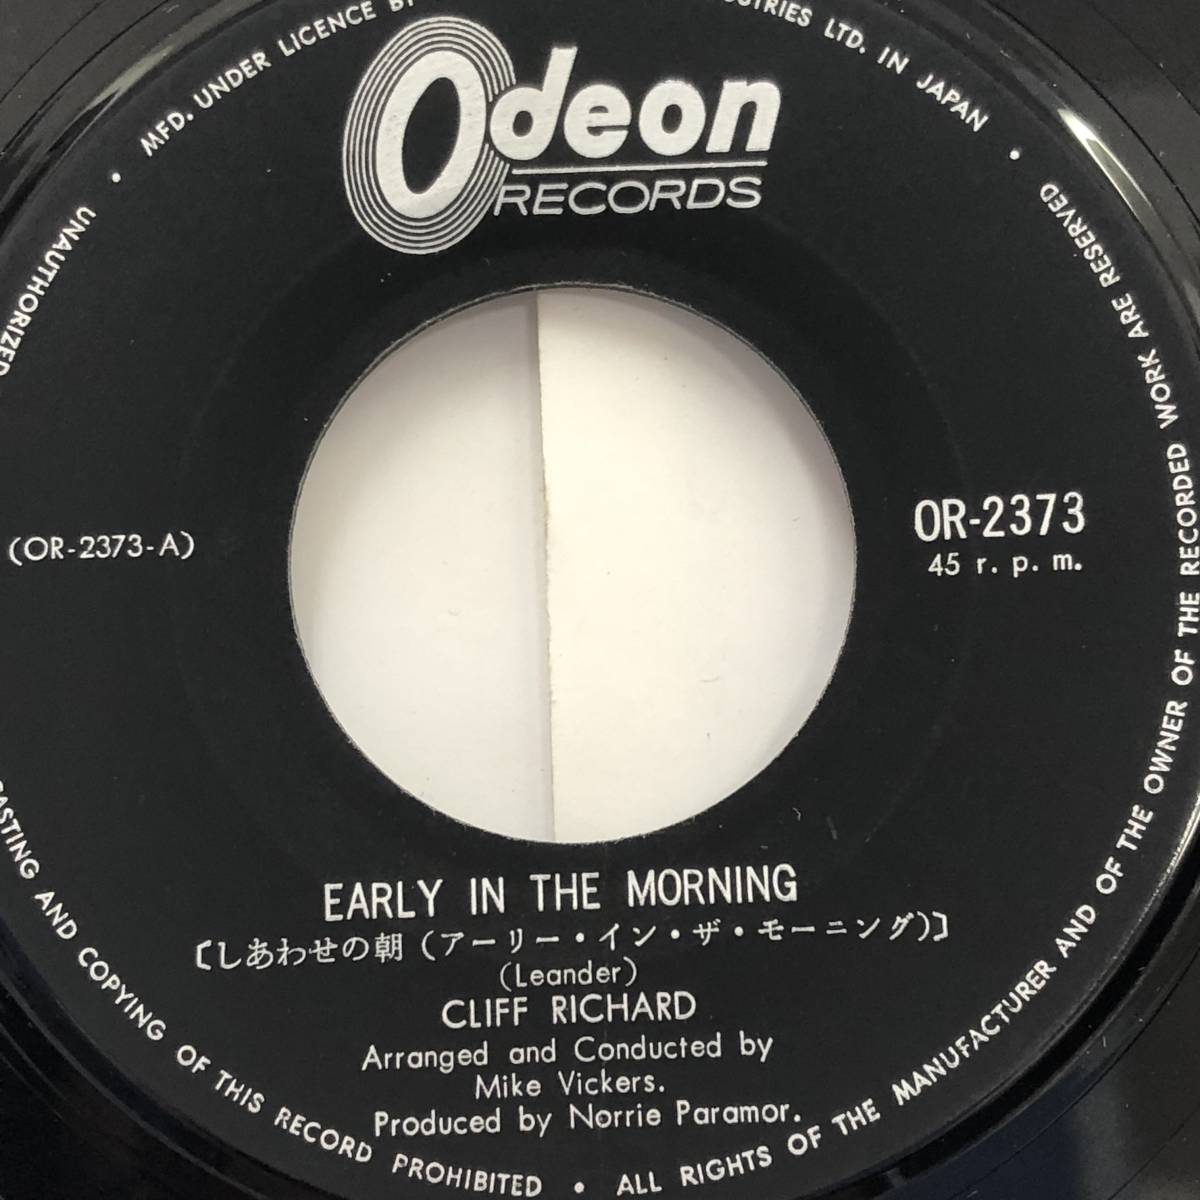 [レコード] EP「CLIFF RICHARD：Early In The Morning(しあわせの朝)」 クリフ・リチャード 45RPM Odeonレコード レトロ 中古_画像5